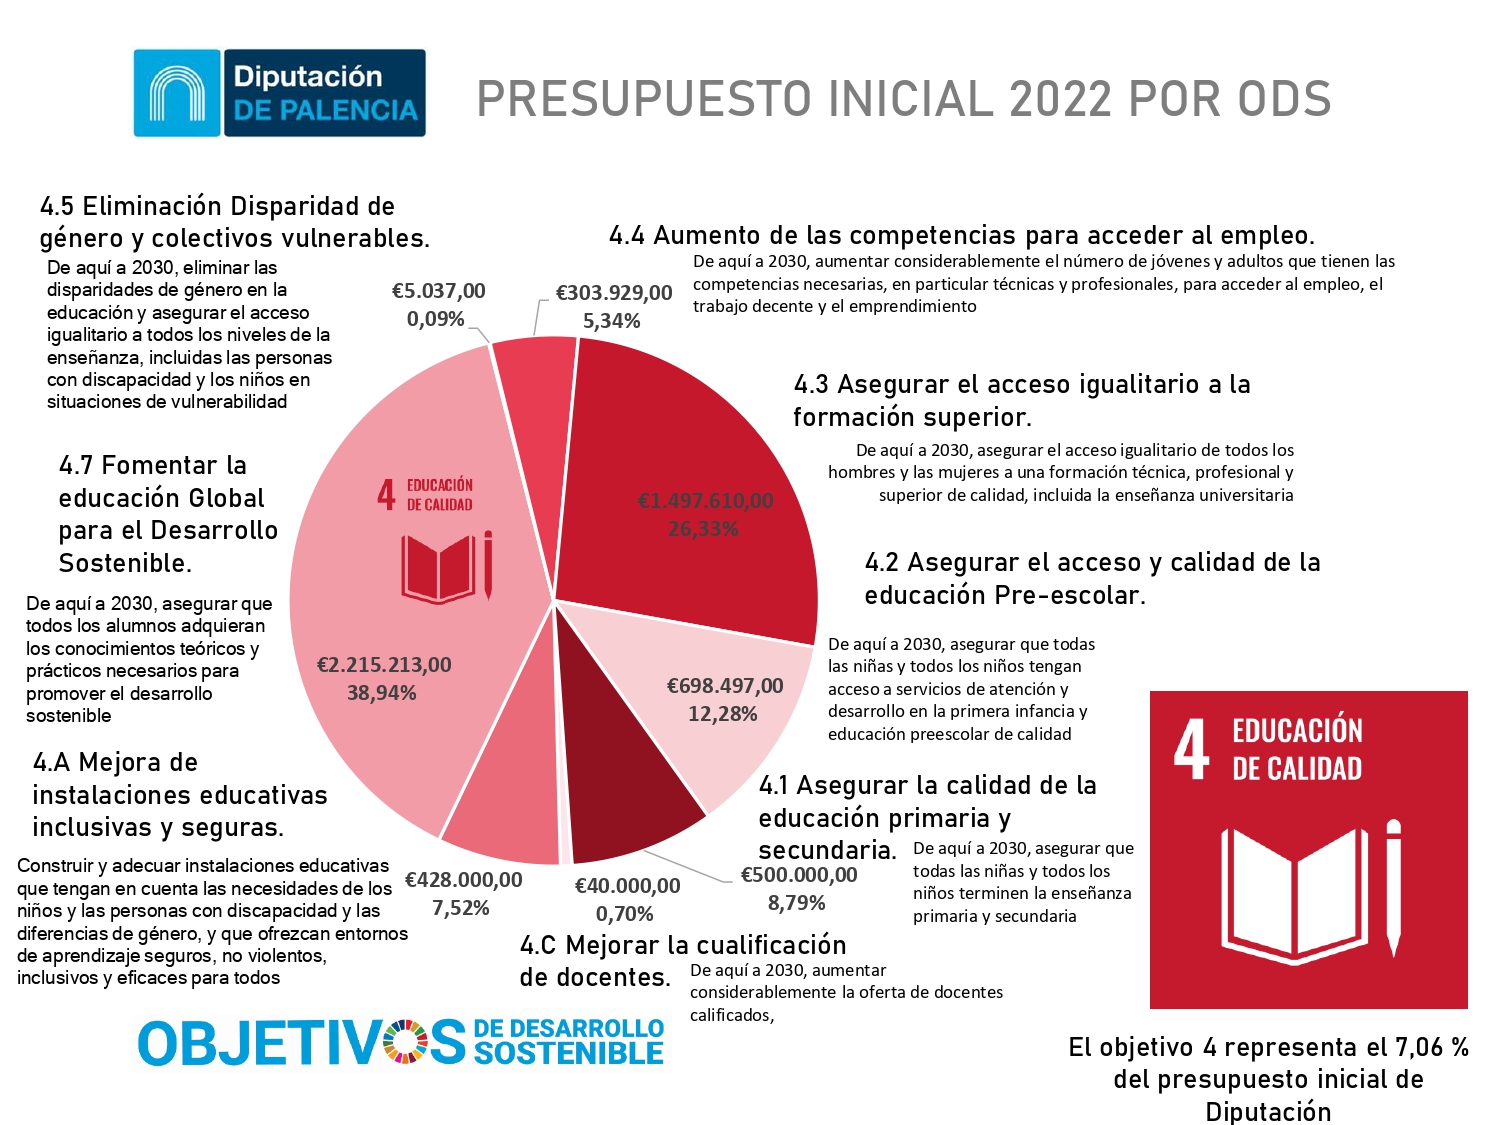 ODS OBJETIVO 4 EDUCACION DE CALIDAD - PRESUPUESTOS 2022 